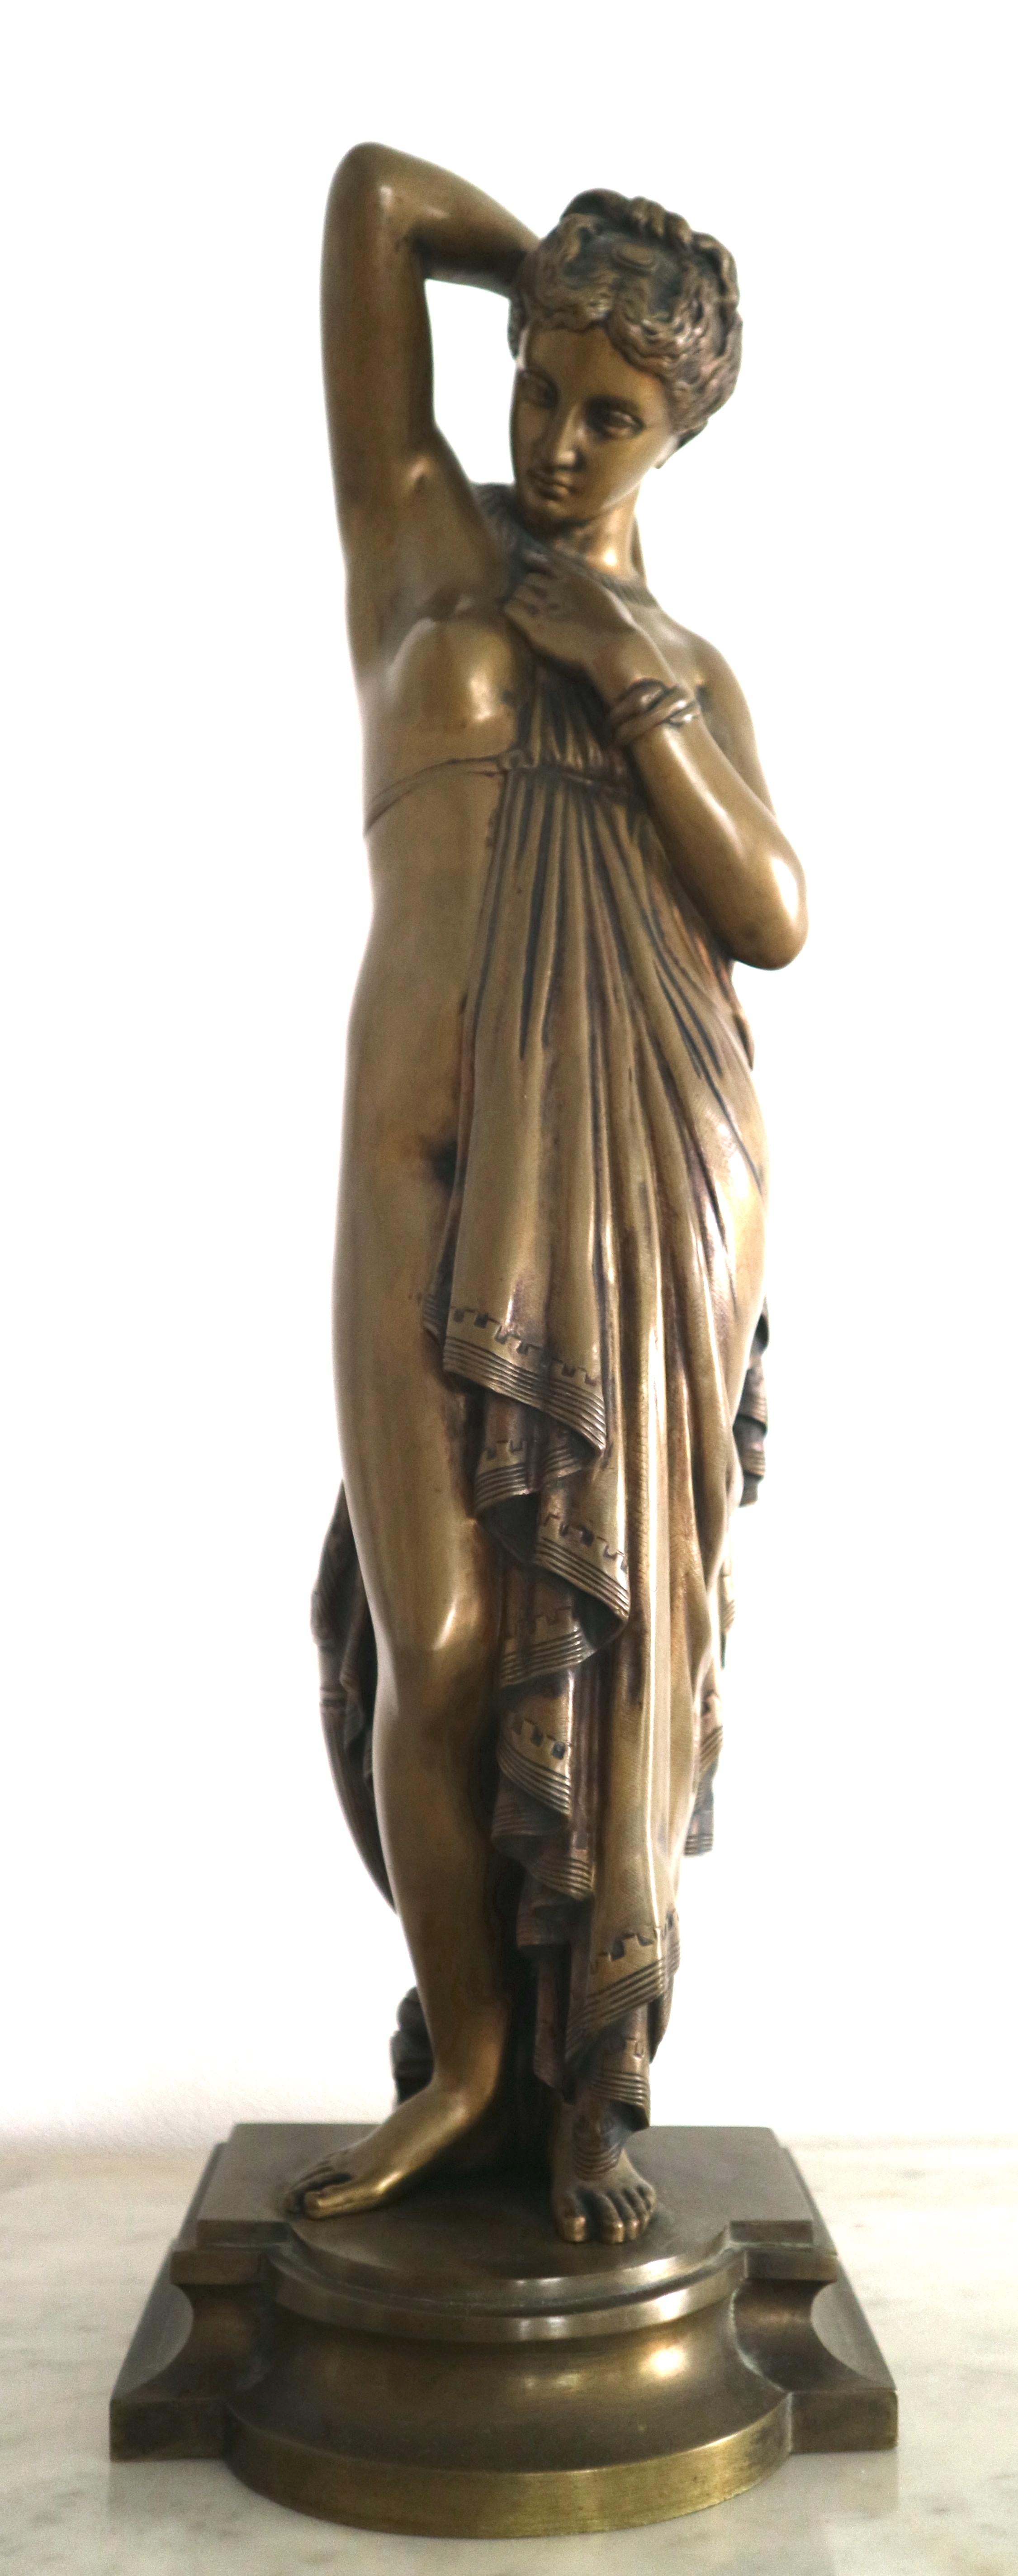 Phryne von James Pradier 1790-1852

Schöne Bronze, die "Phryne" eine sehr hübsche Kurtisane des antiken Griechenlands mit seinem Peplo bedeckt.

Stempel von Susse frères, signiert auf der Terrasse "Pradier".

Phryne (ca. 371 v. Chr. - nach 316 v.